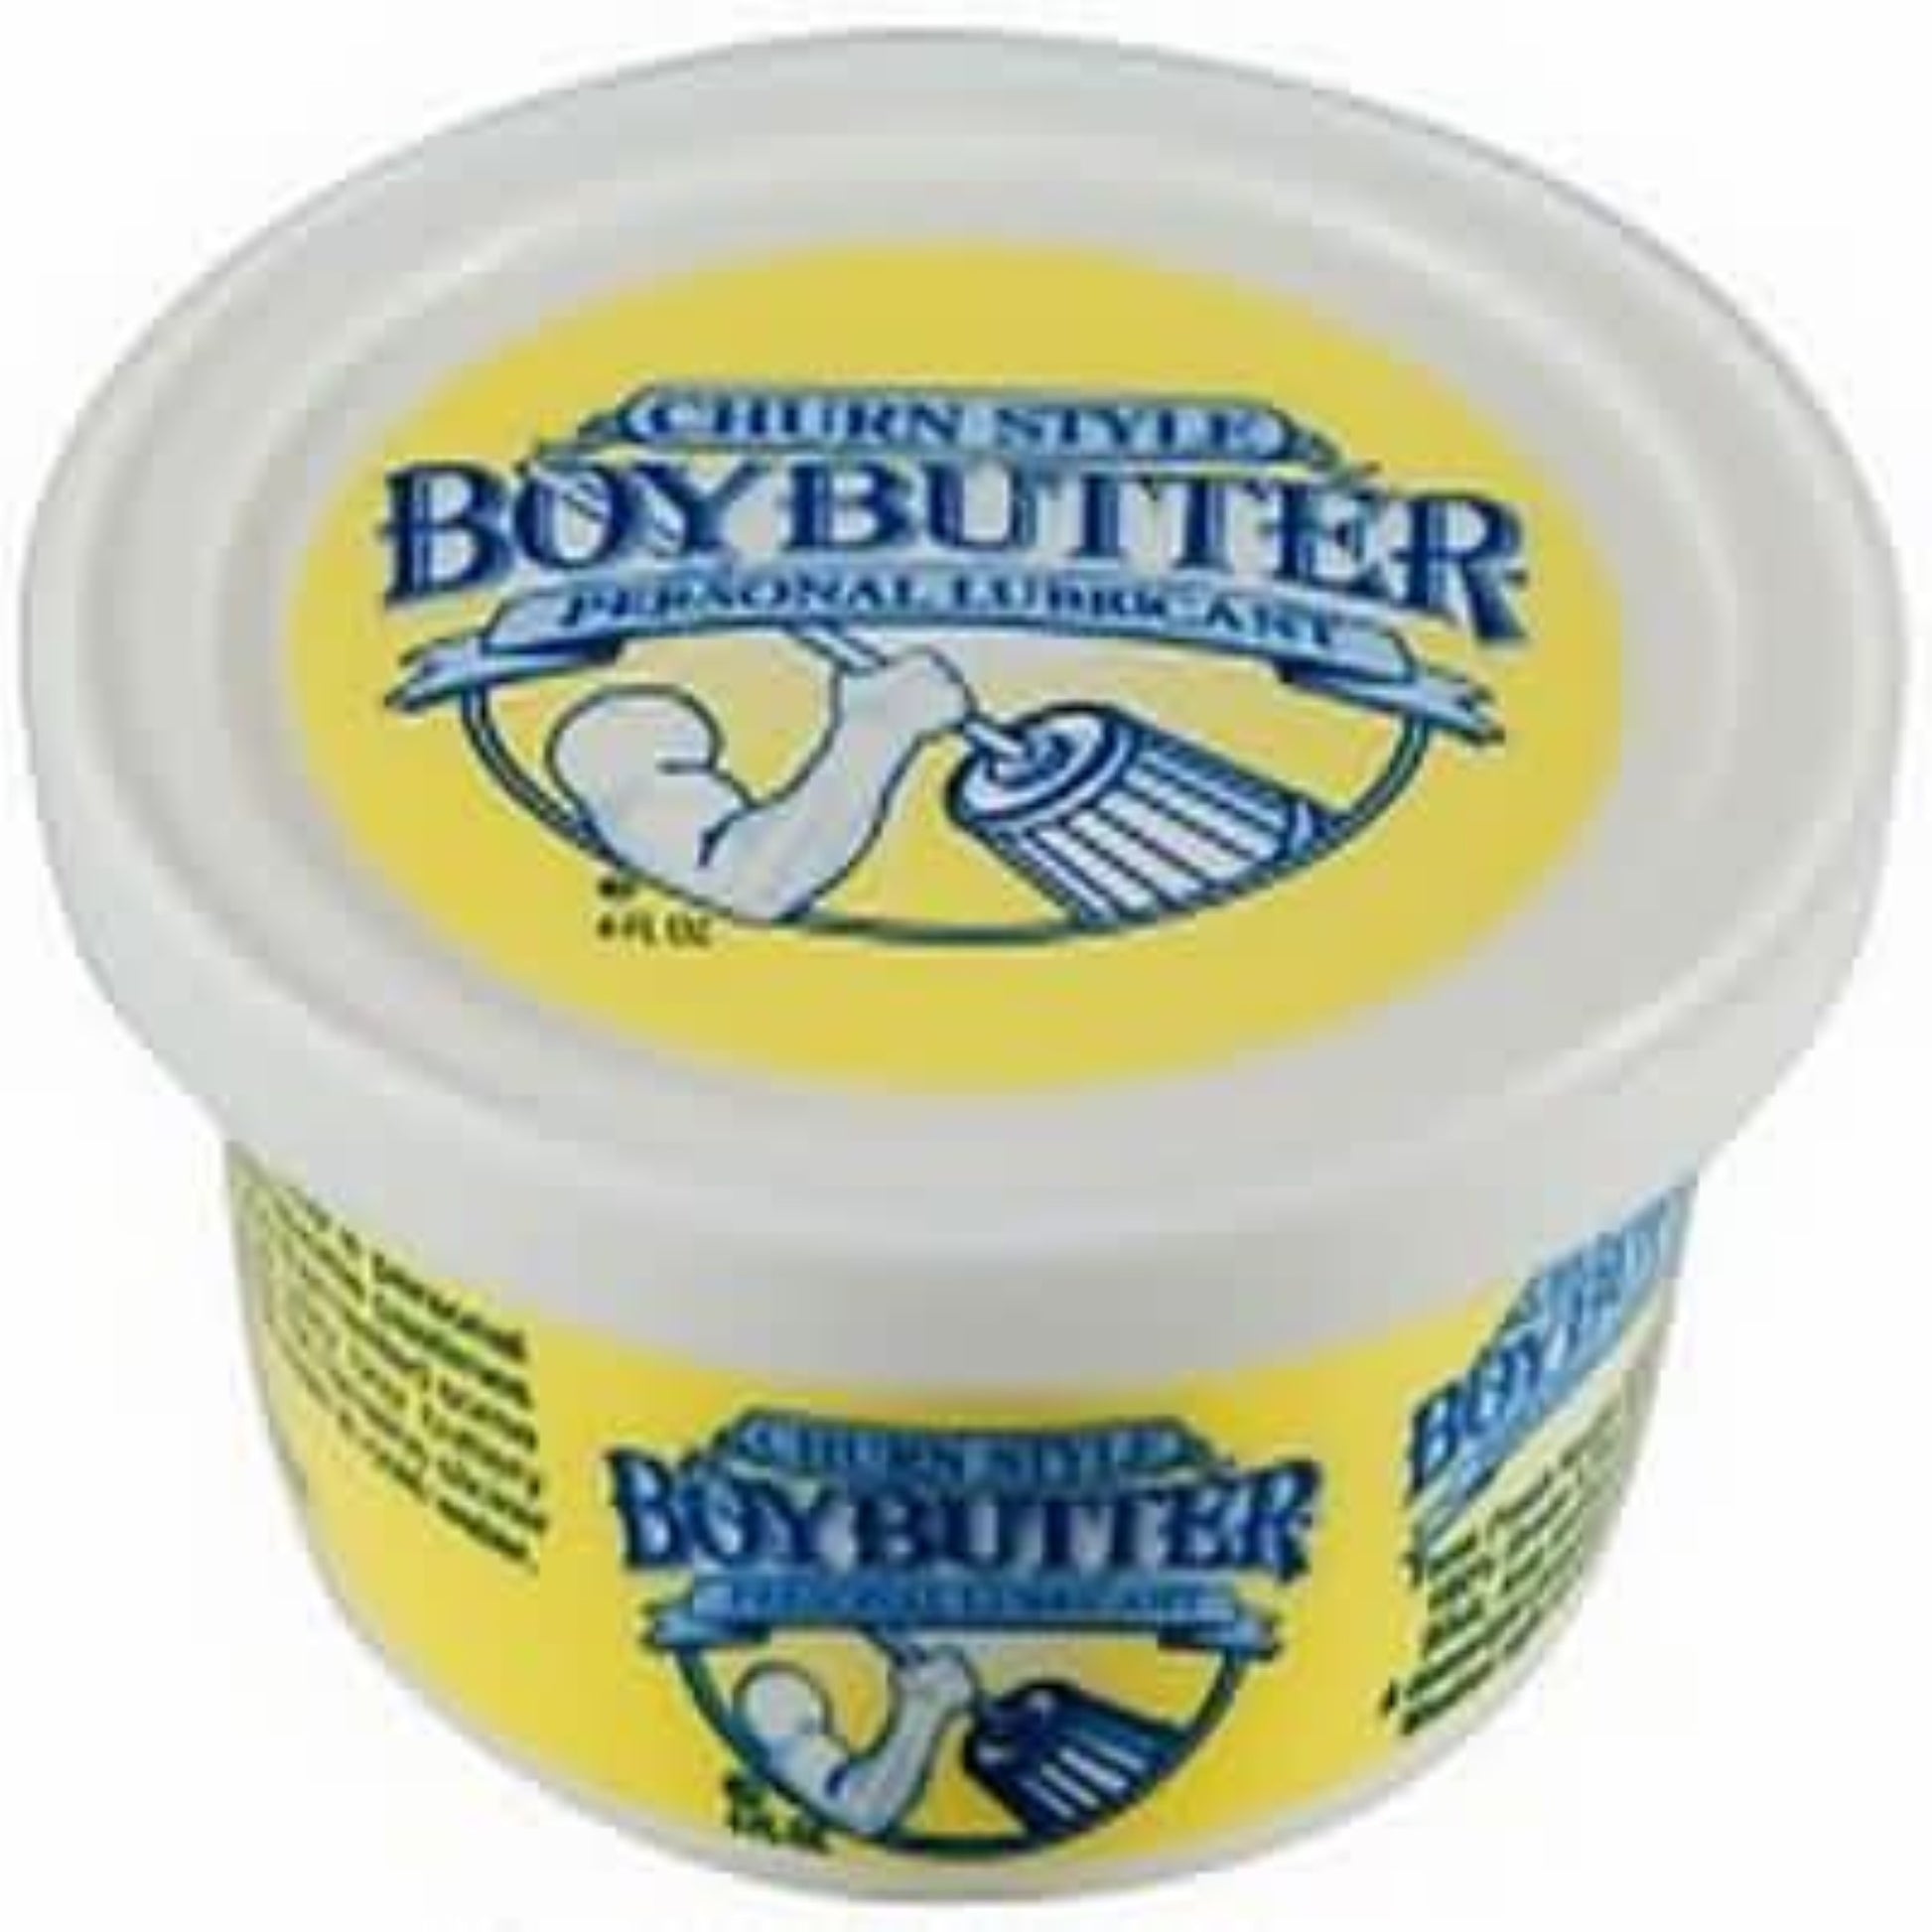 boy-butter